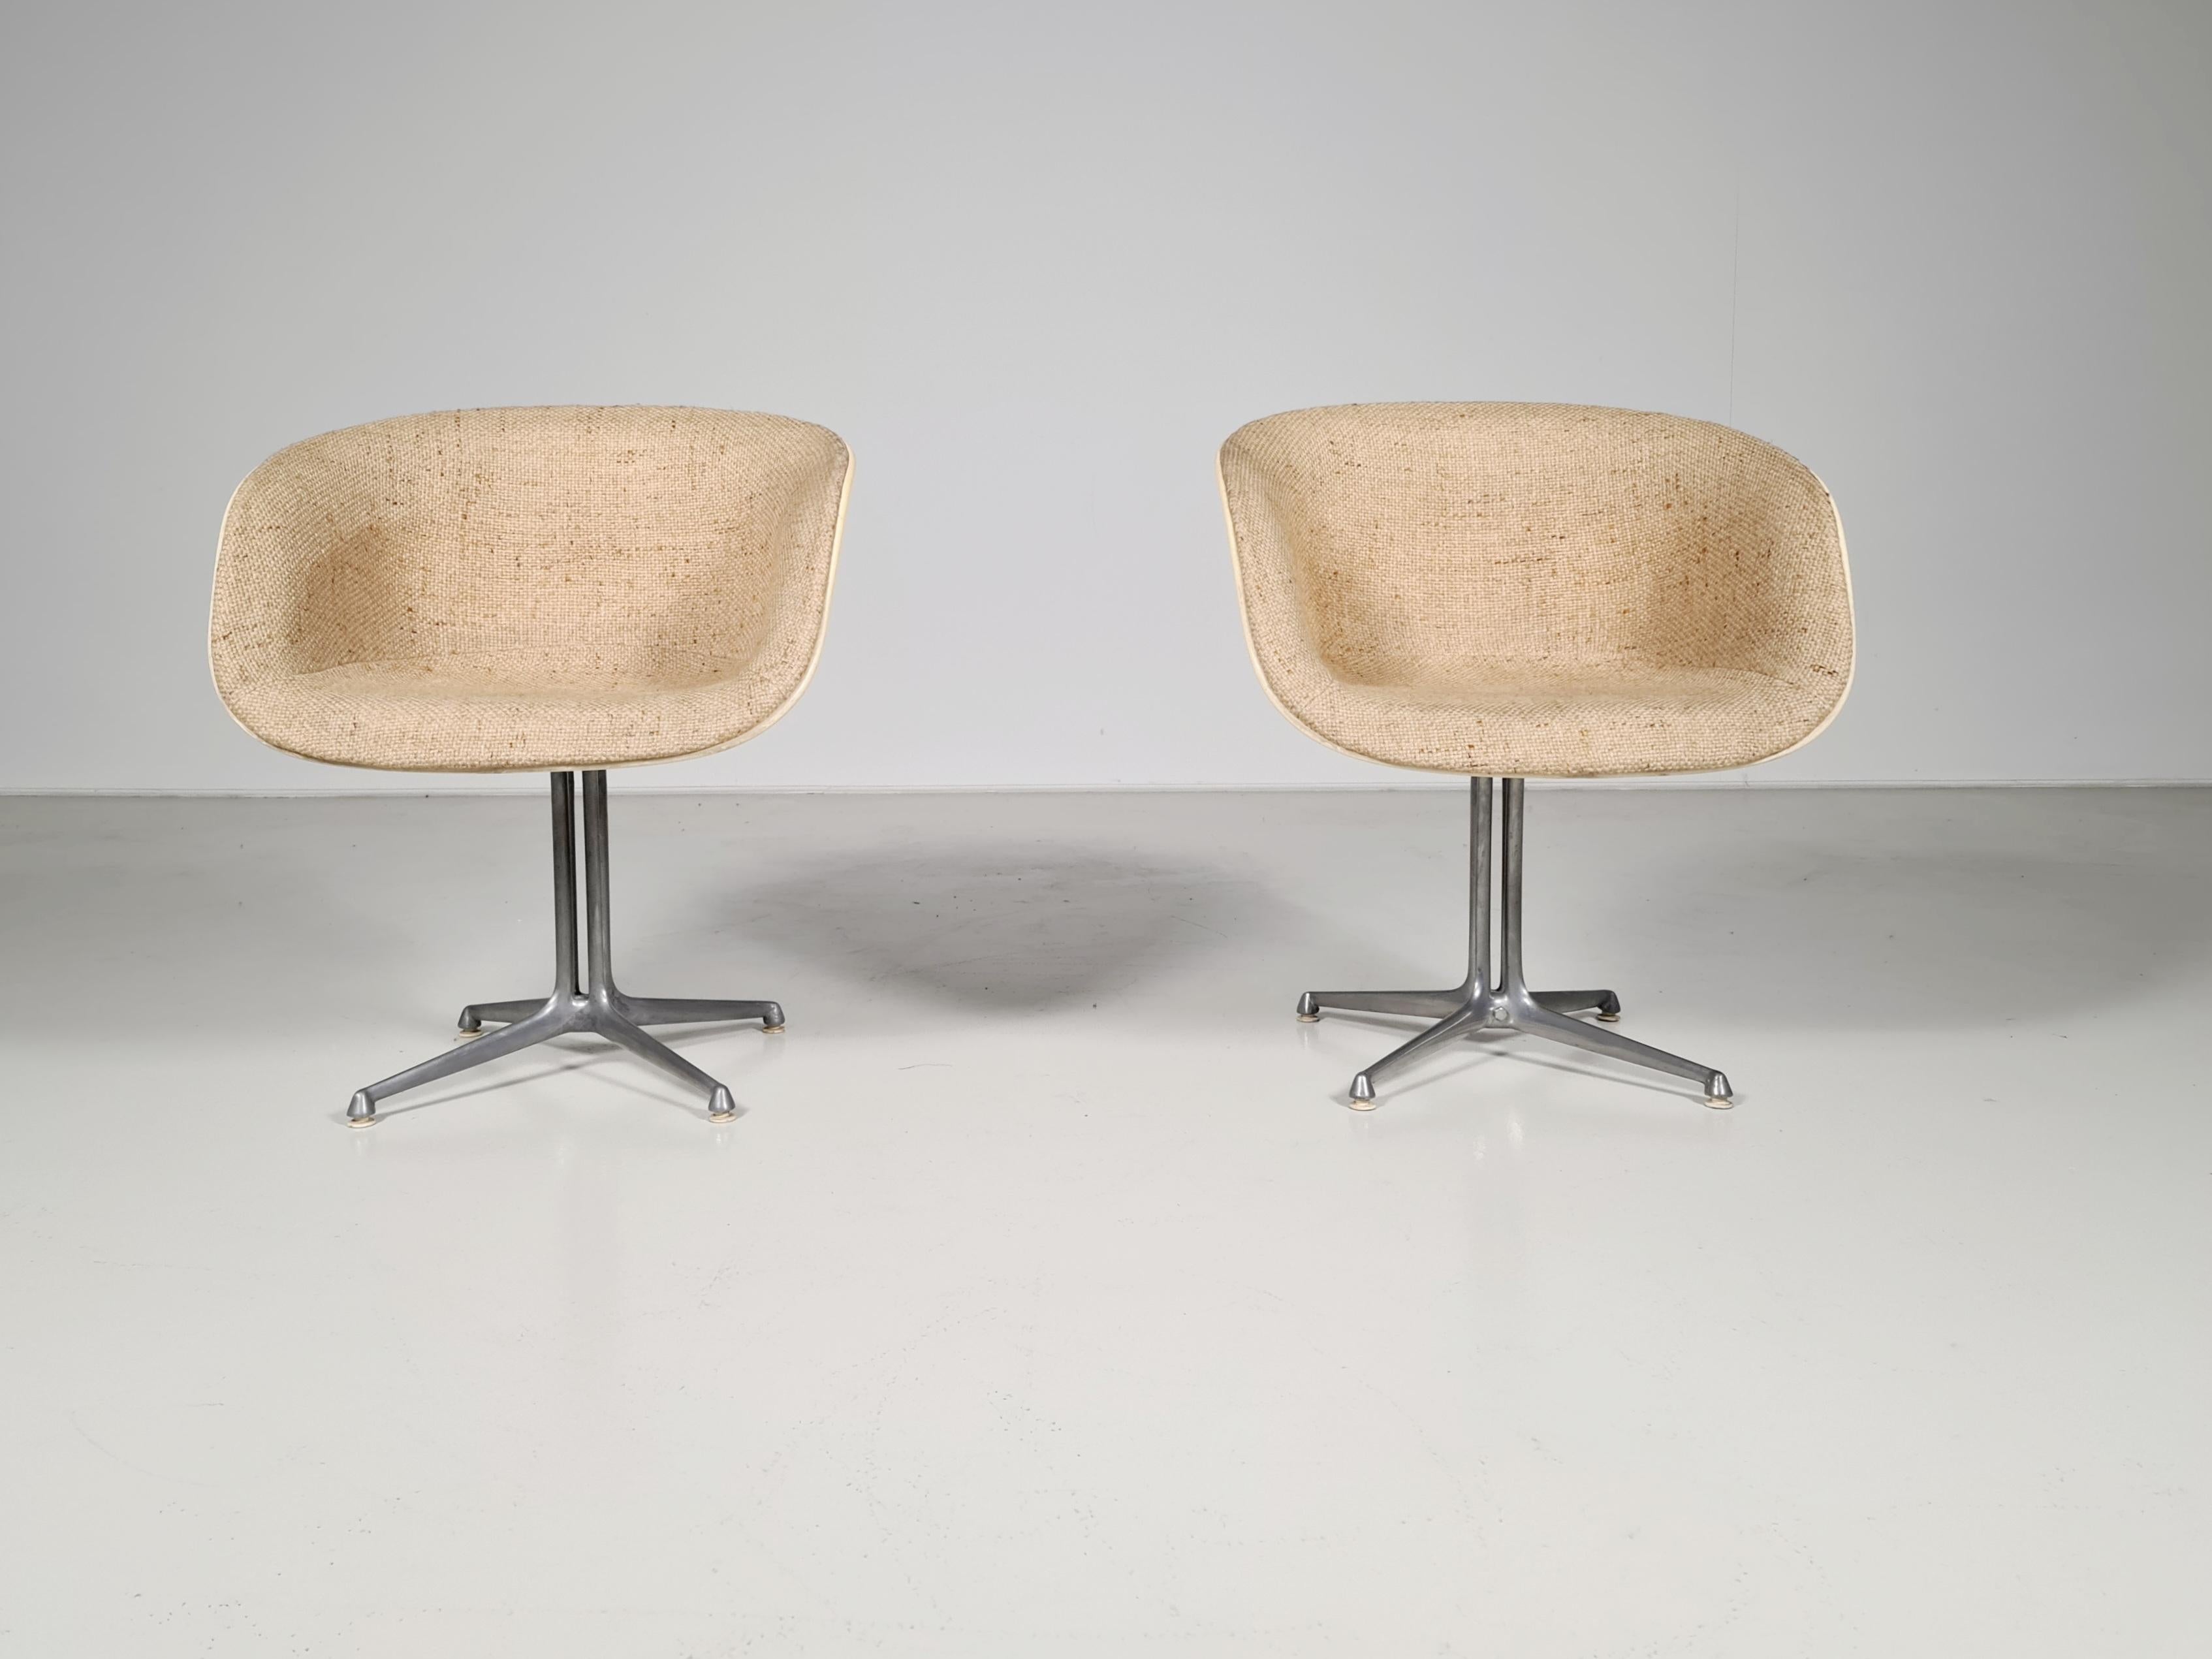 Chaises La Fonda par Eames pour Vitra, Orange, Fibre de verre, années 1960.

Cet adorable ensemble de deux fauteuils La Fonda attirera le regard dans toutes les pièces de style. Ils sont présentés dans leur tissu de laine d'origine.

Les